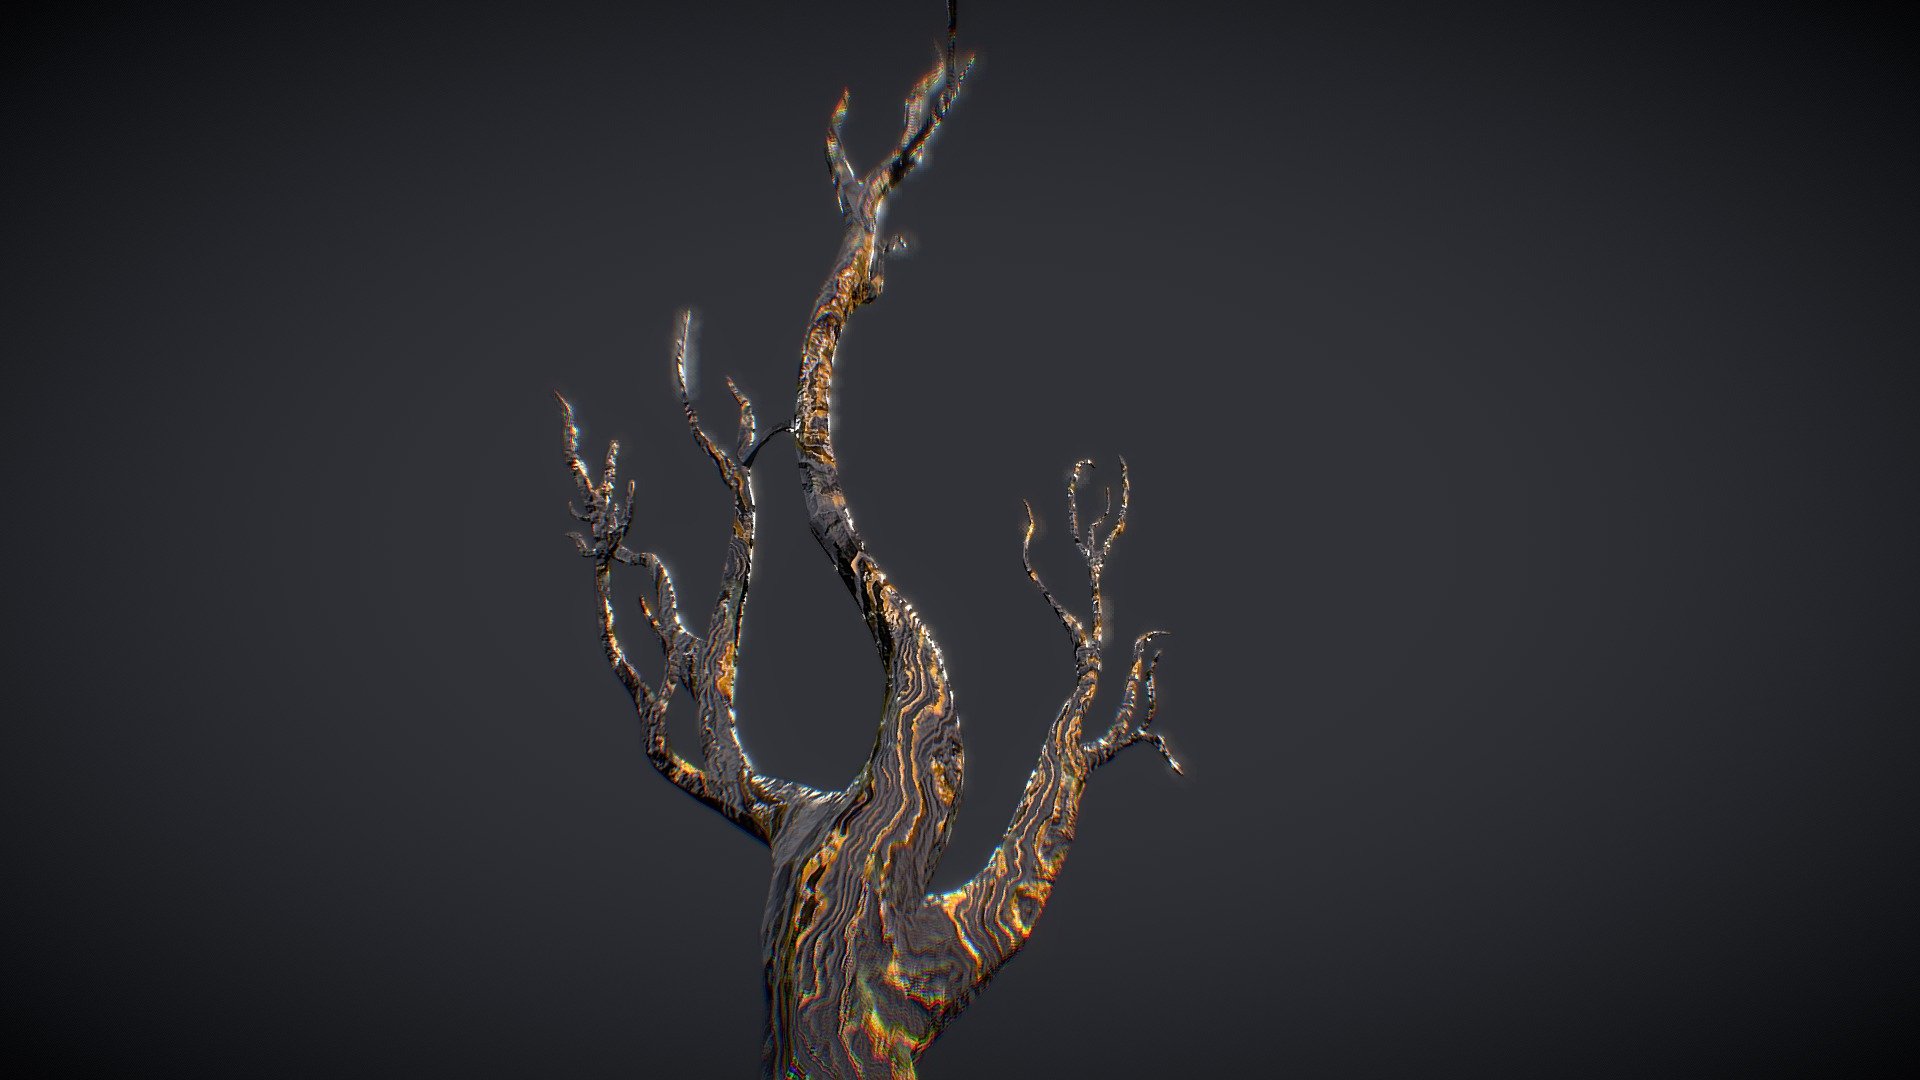 free 3d tree models for blender